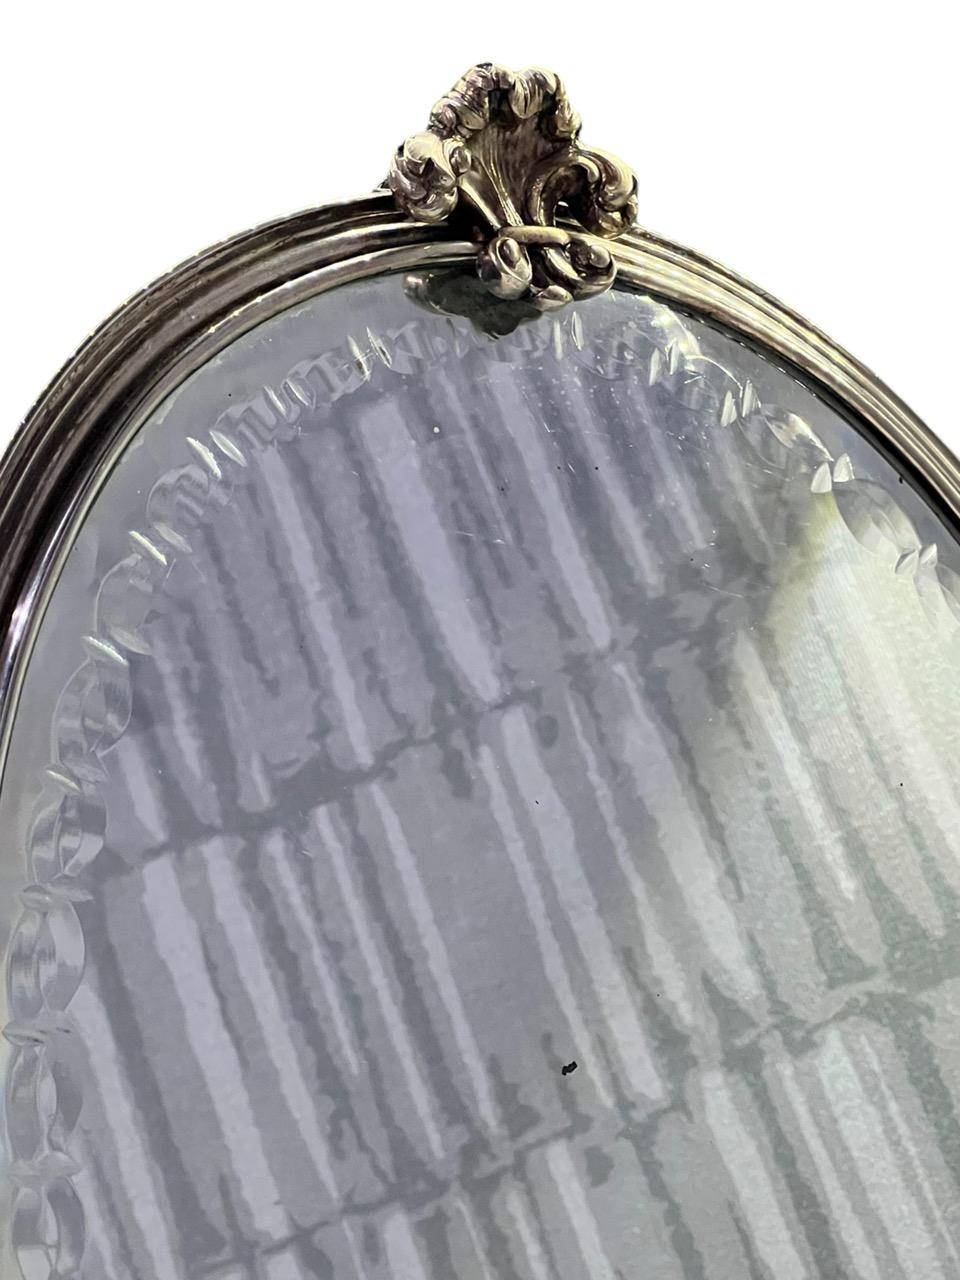 Mario Buccellati 20th Century Italian Sterling Silver Oval Mirror For Sale 3